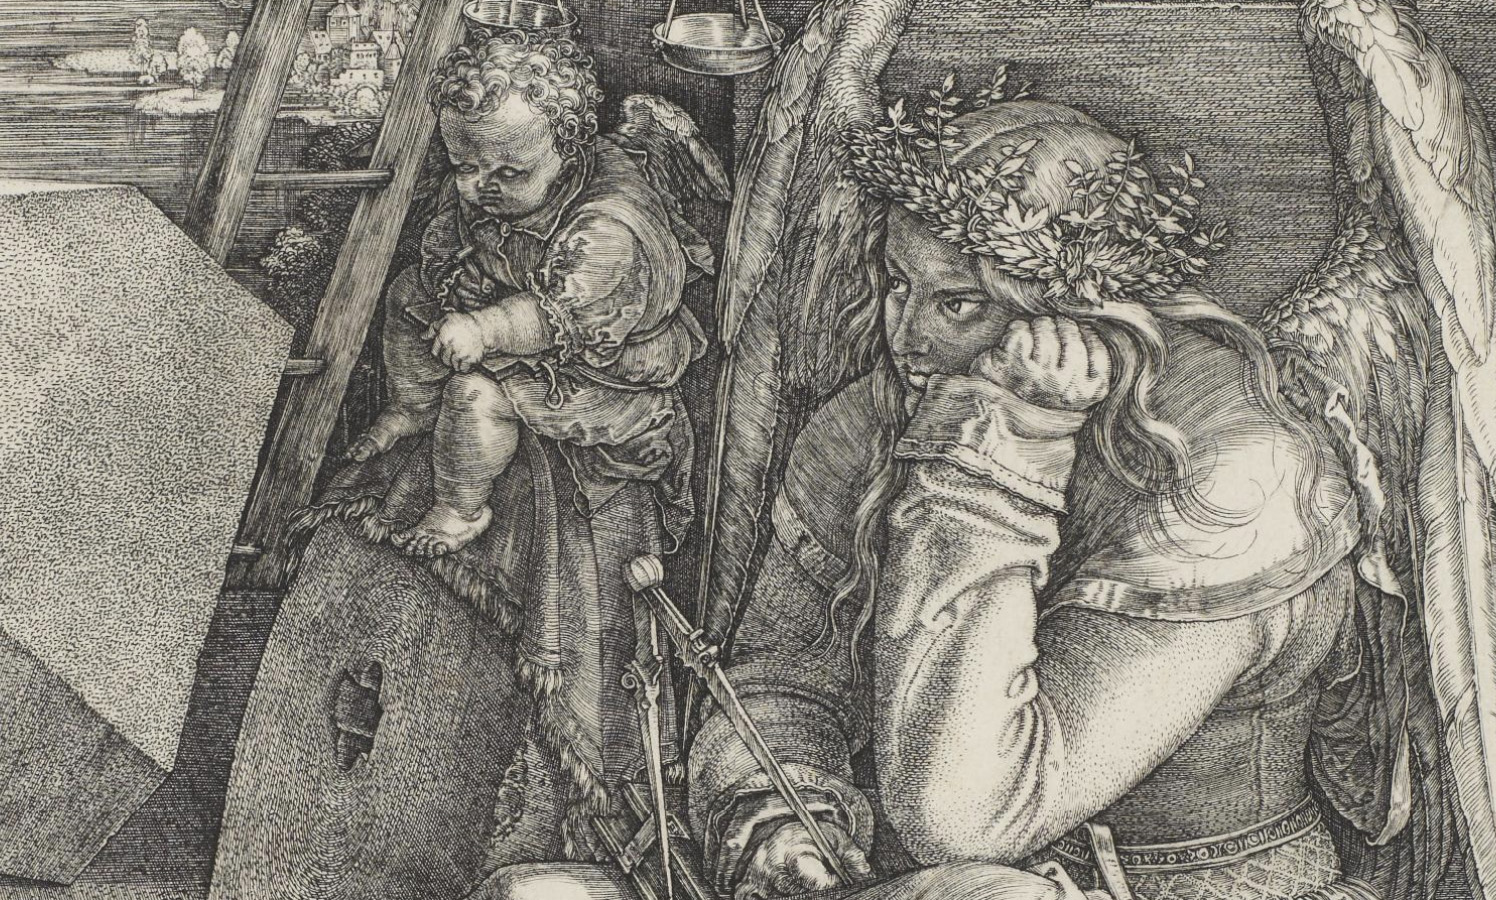 Albrecht Dürer, Melencolia I, 1514, engraving, 24.45 x 19.37 cm (Minneapolis Institute of Art)